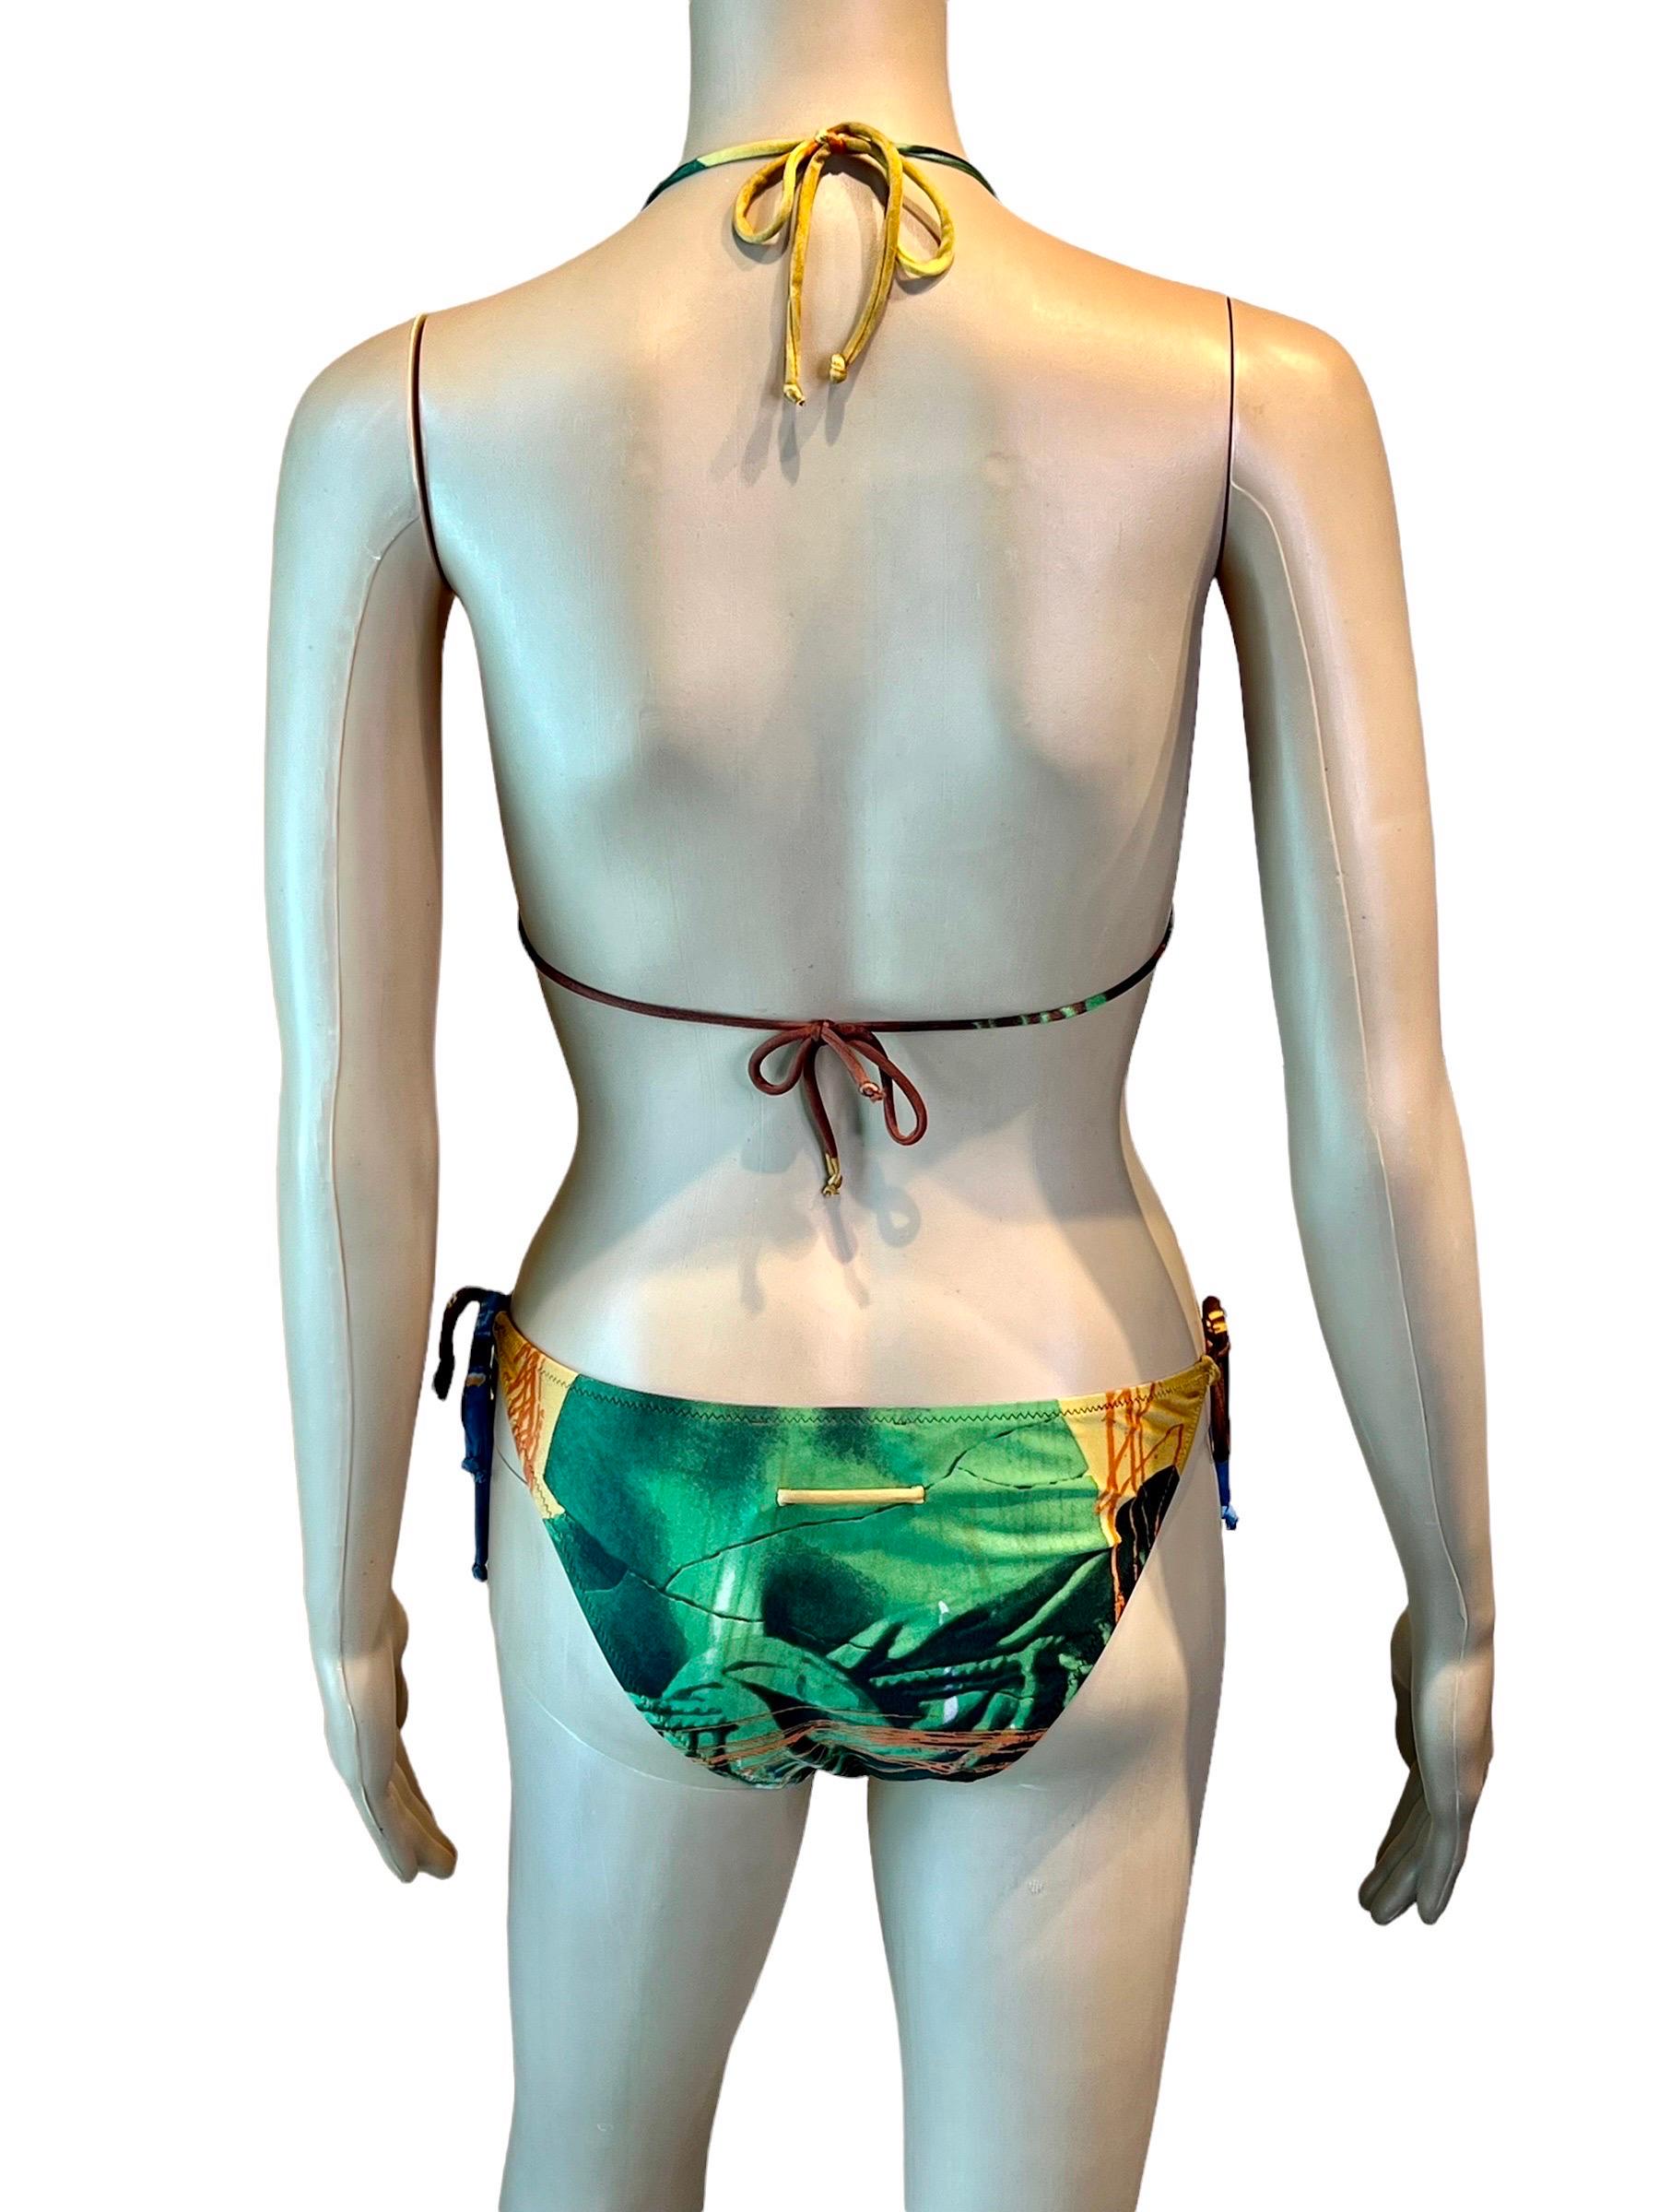 Jean Paul Gaultier S/S 1999 Venus de Milo Bikini Swimwear Swimsuit 2 Piece Set 1